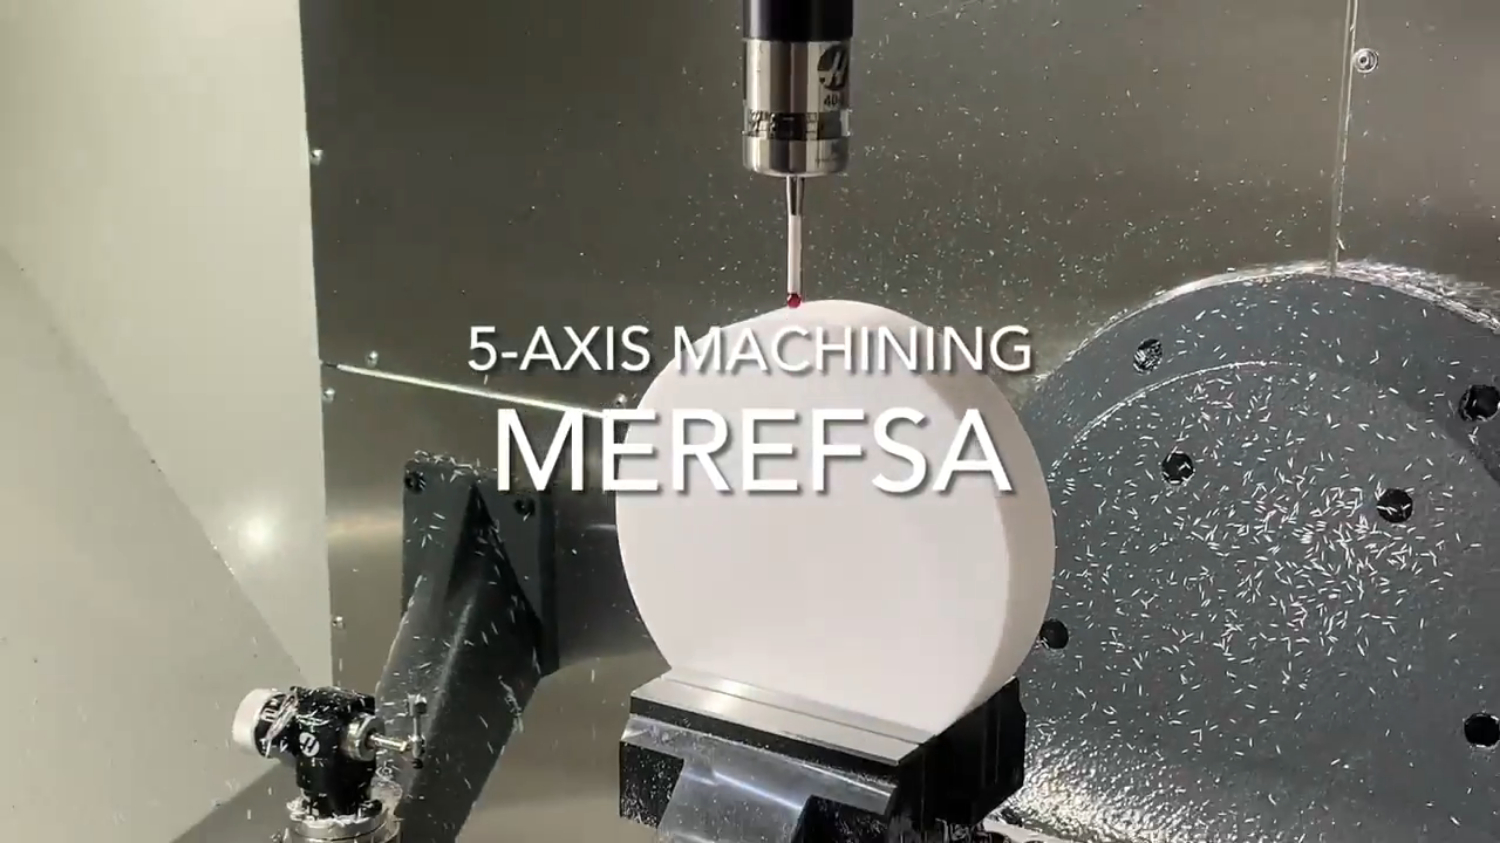 Proceso de mecanizado en MEREFSA: mecanizado simultáneo de 5 ejes